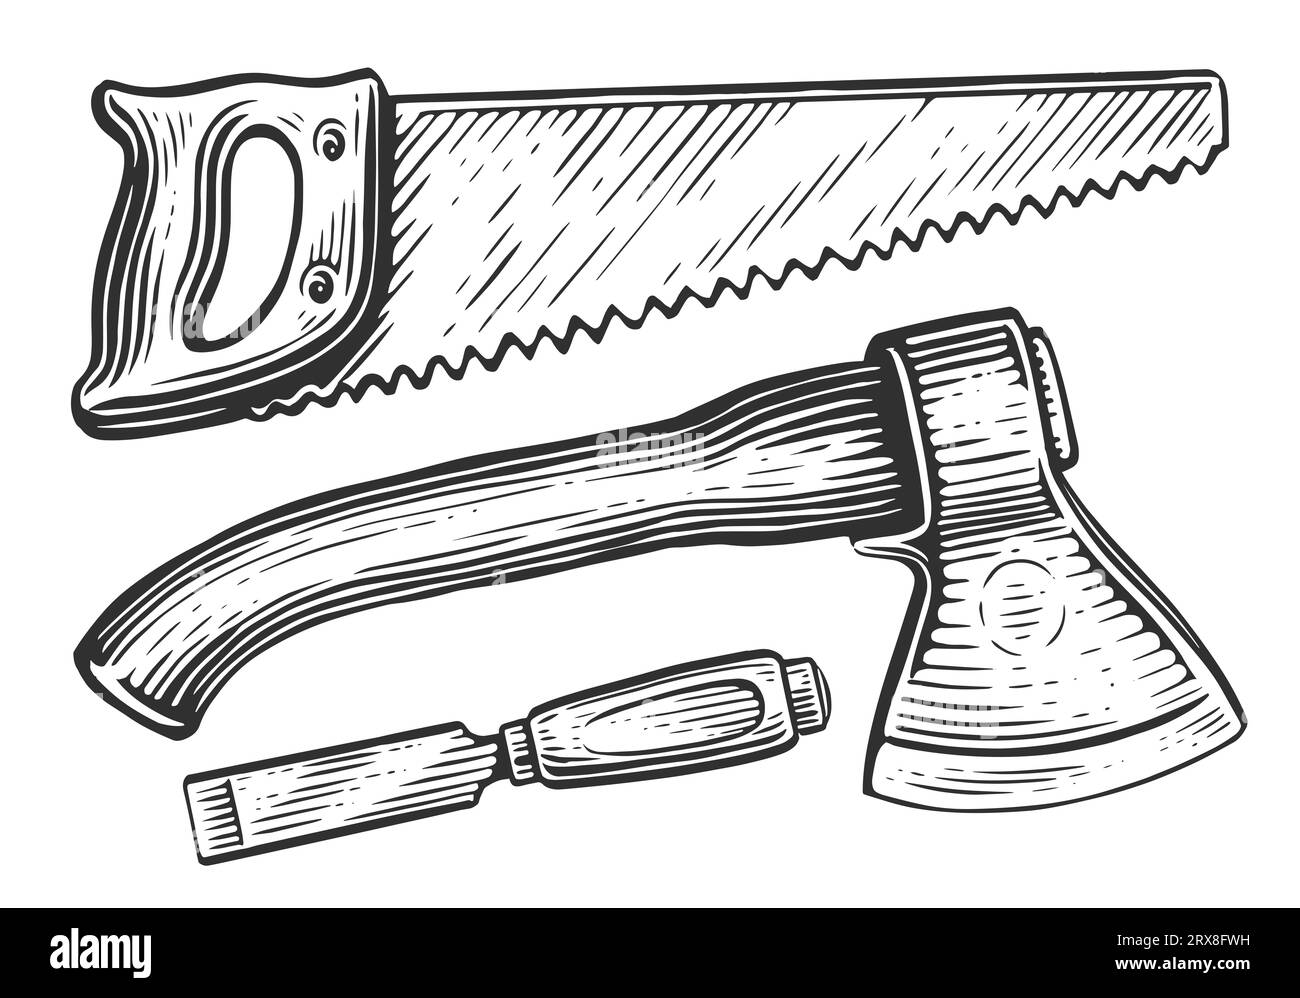 Bügelsäge, Axt, Holzschneider. Set mit Werkzeugen für die Holzbearbeitung und Zimmerei. Skizzenzeichnung Stockfoto